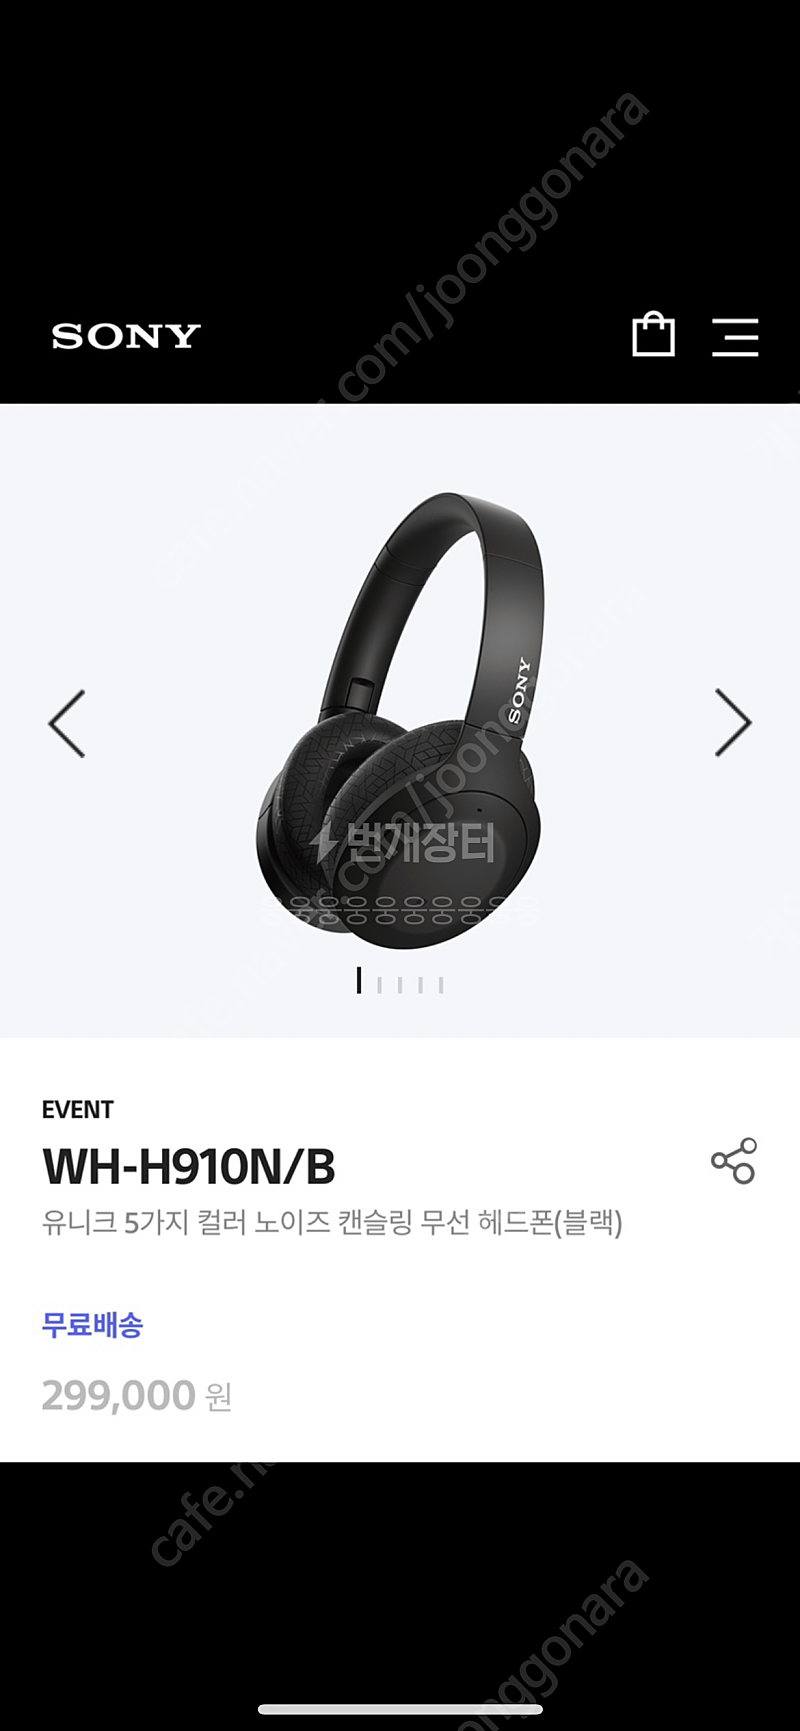 [삽니다]소니 wh-h910n 구매합니다